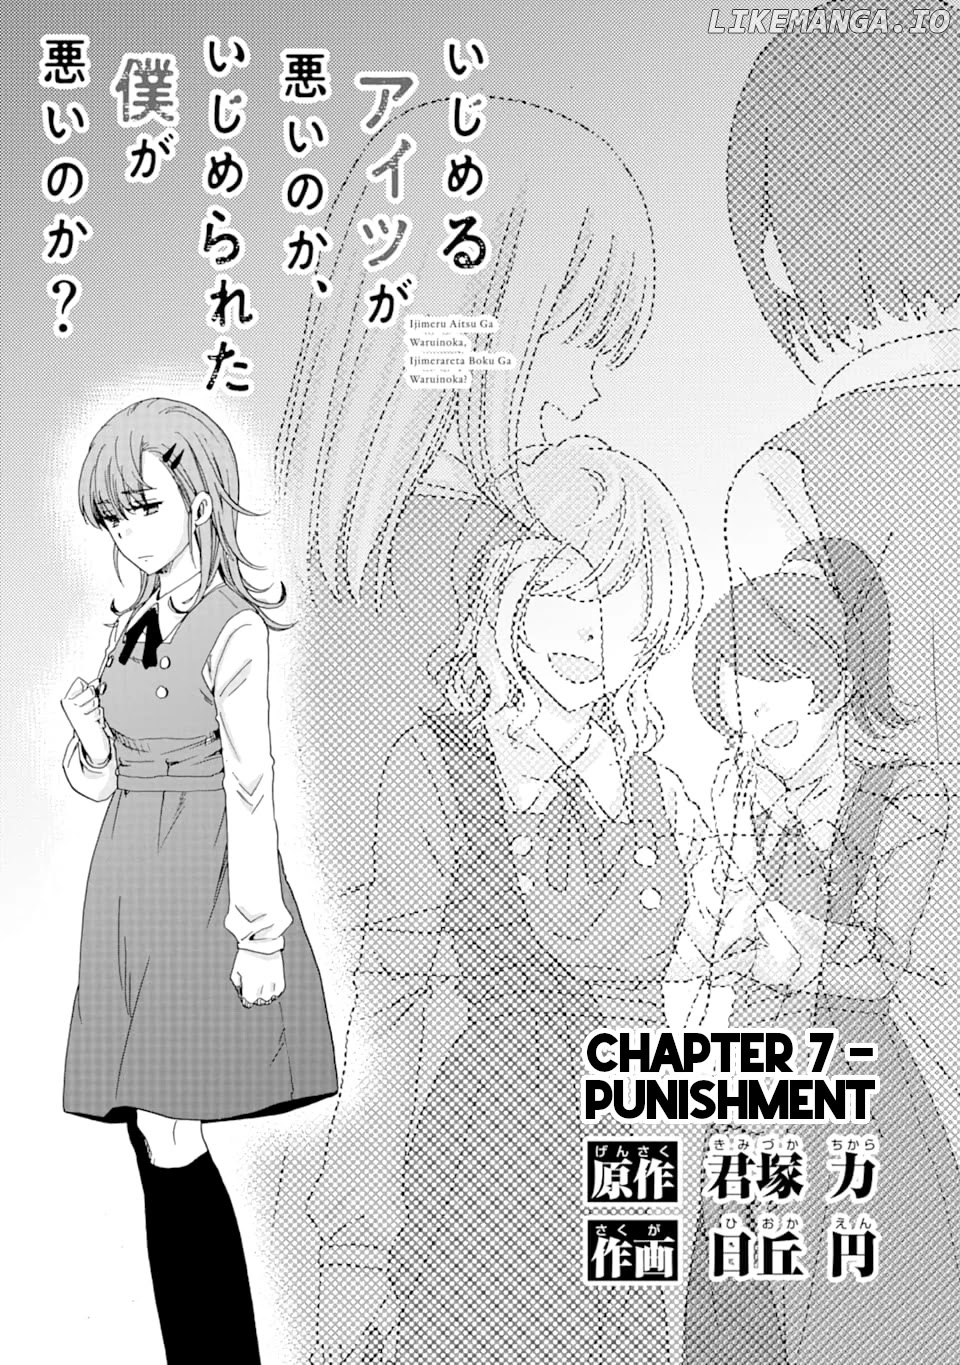 Ijimeru Aitsu ga Waruinoka, Ijimerareta Boku ga Waruinoka? chapter 7 - page 1